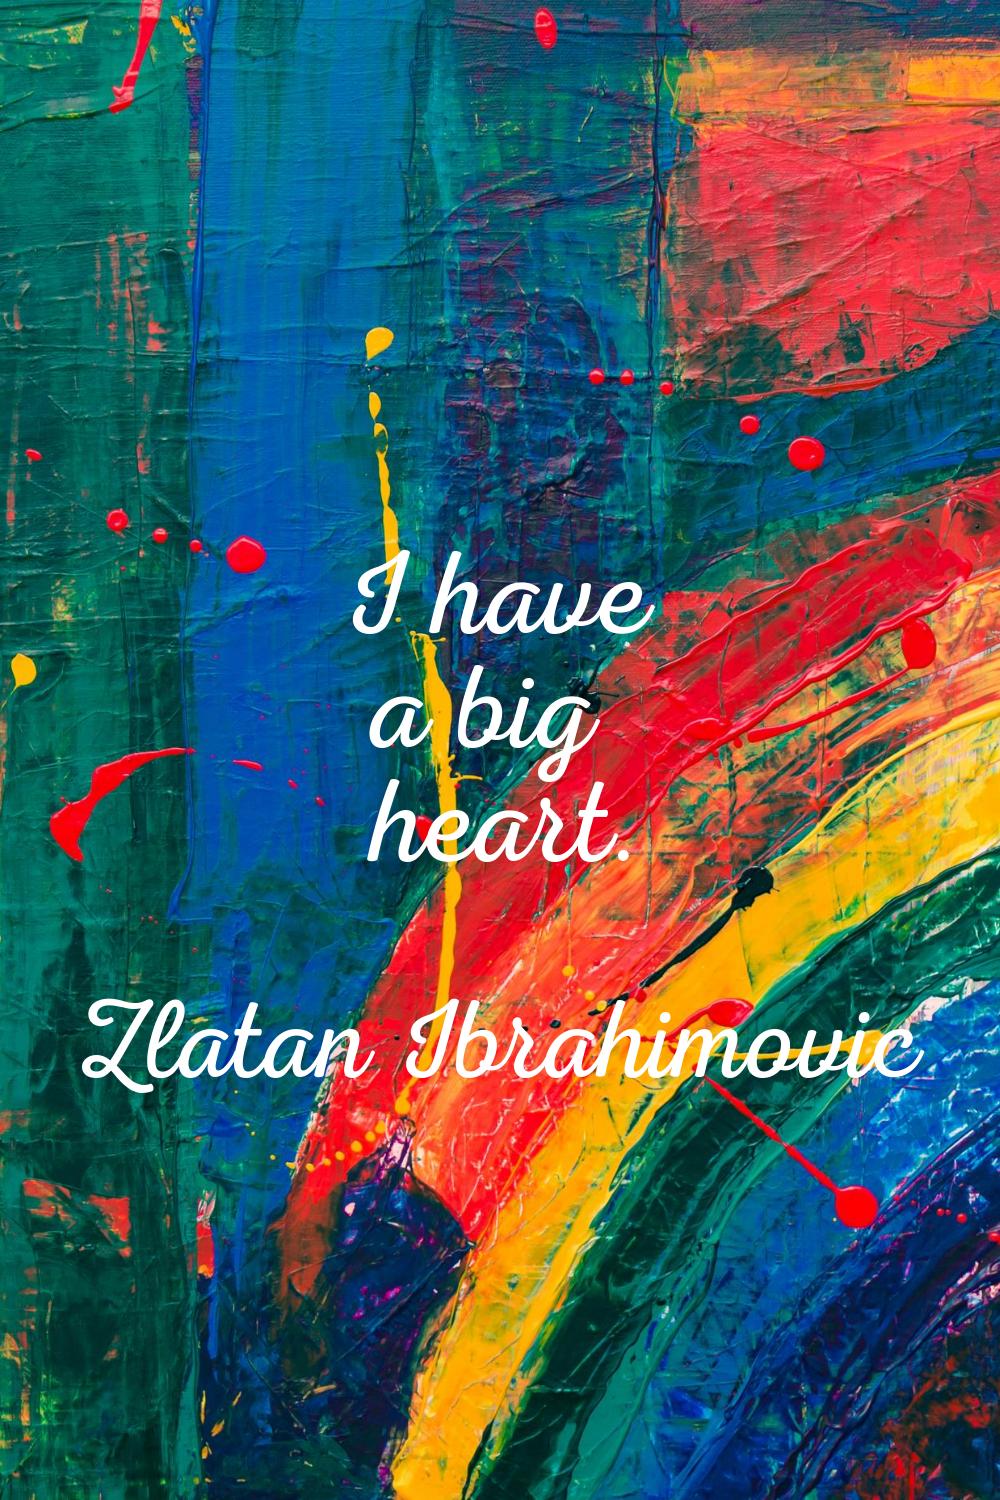 I have a big heart.